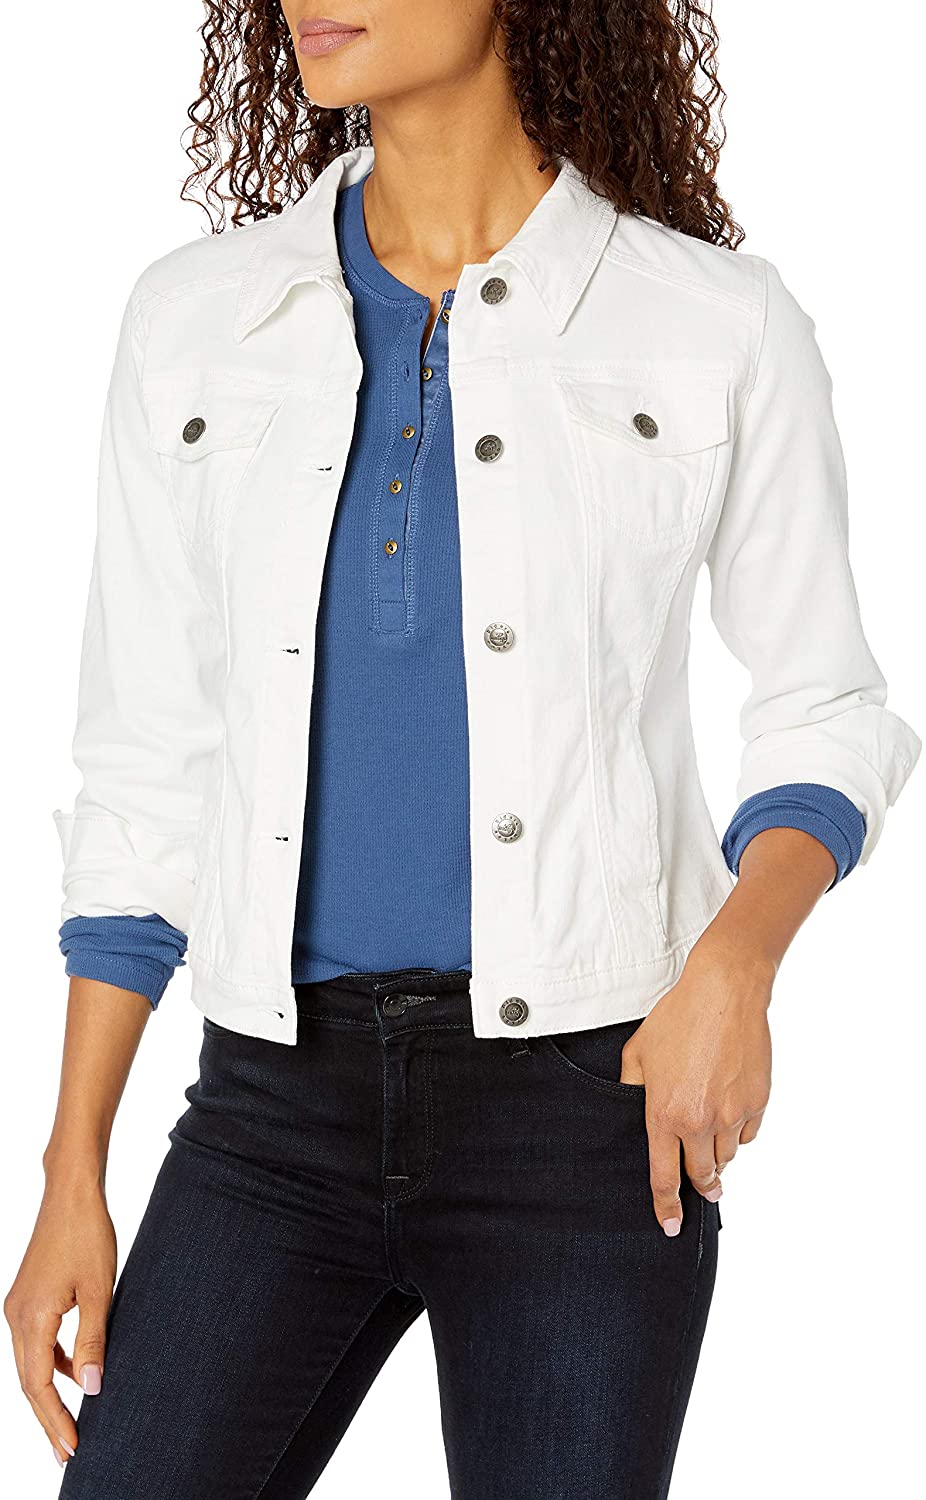 Lee Jeans Trucker Jacket – jackets & coats – shop at Booztlet